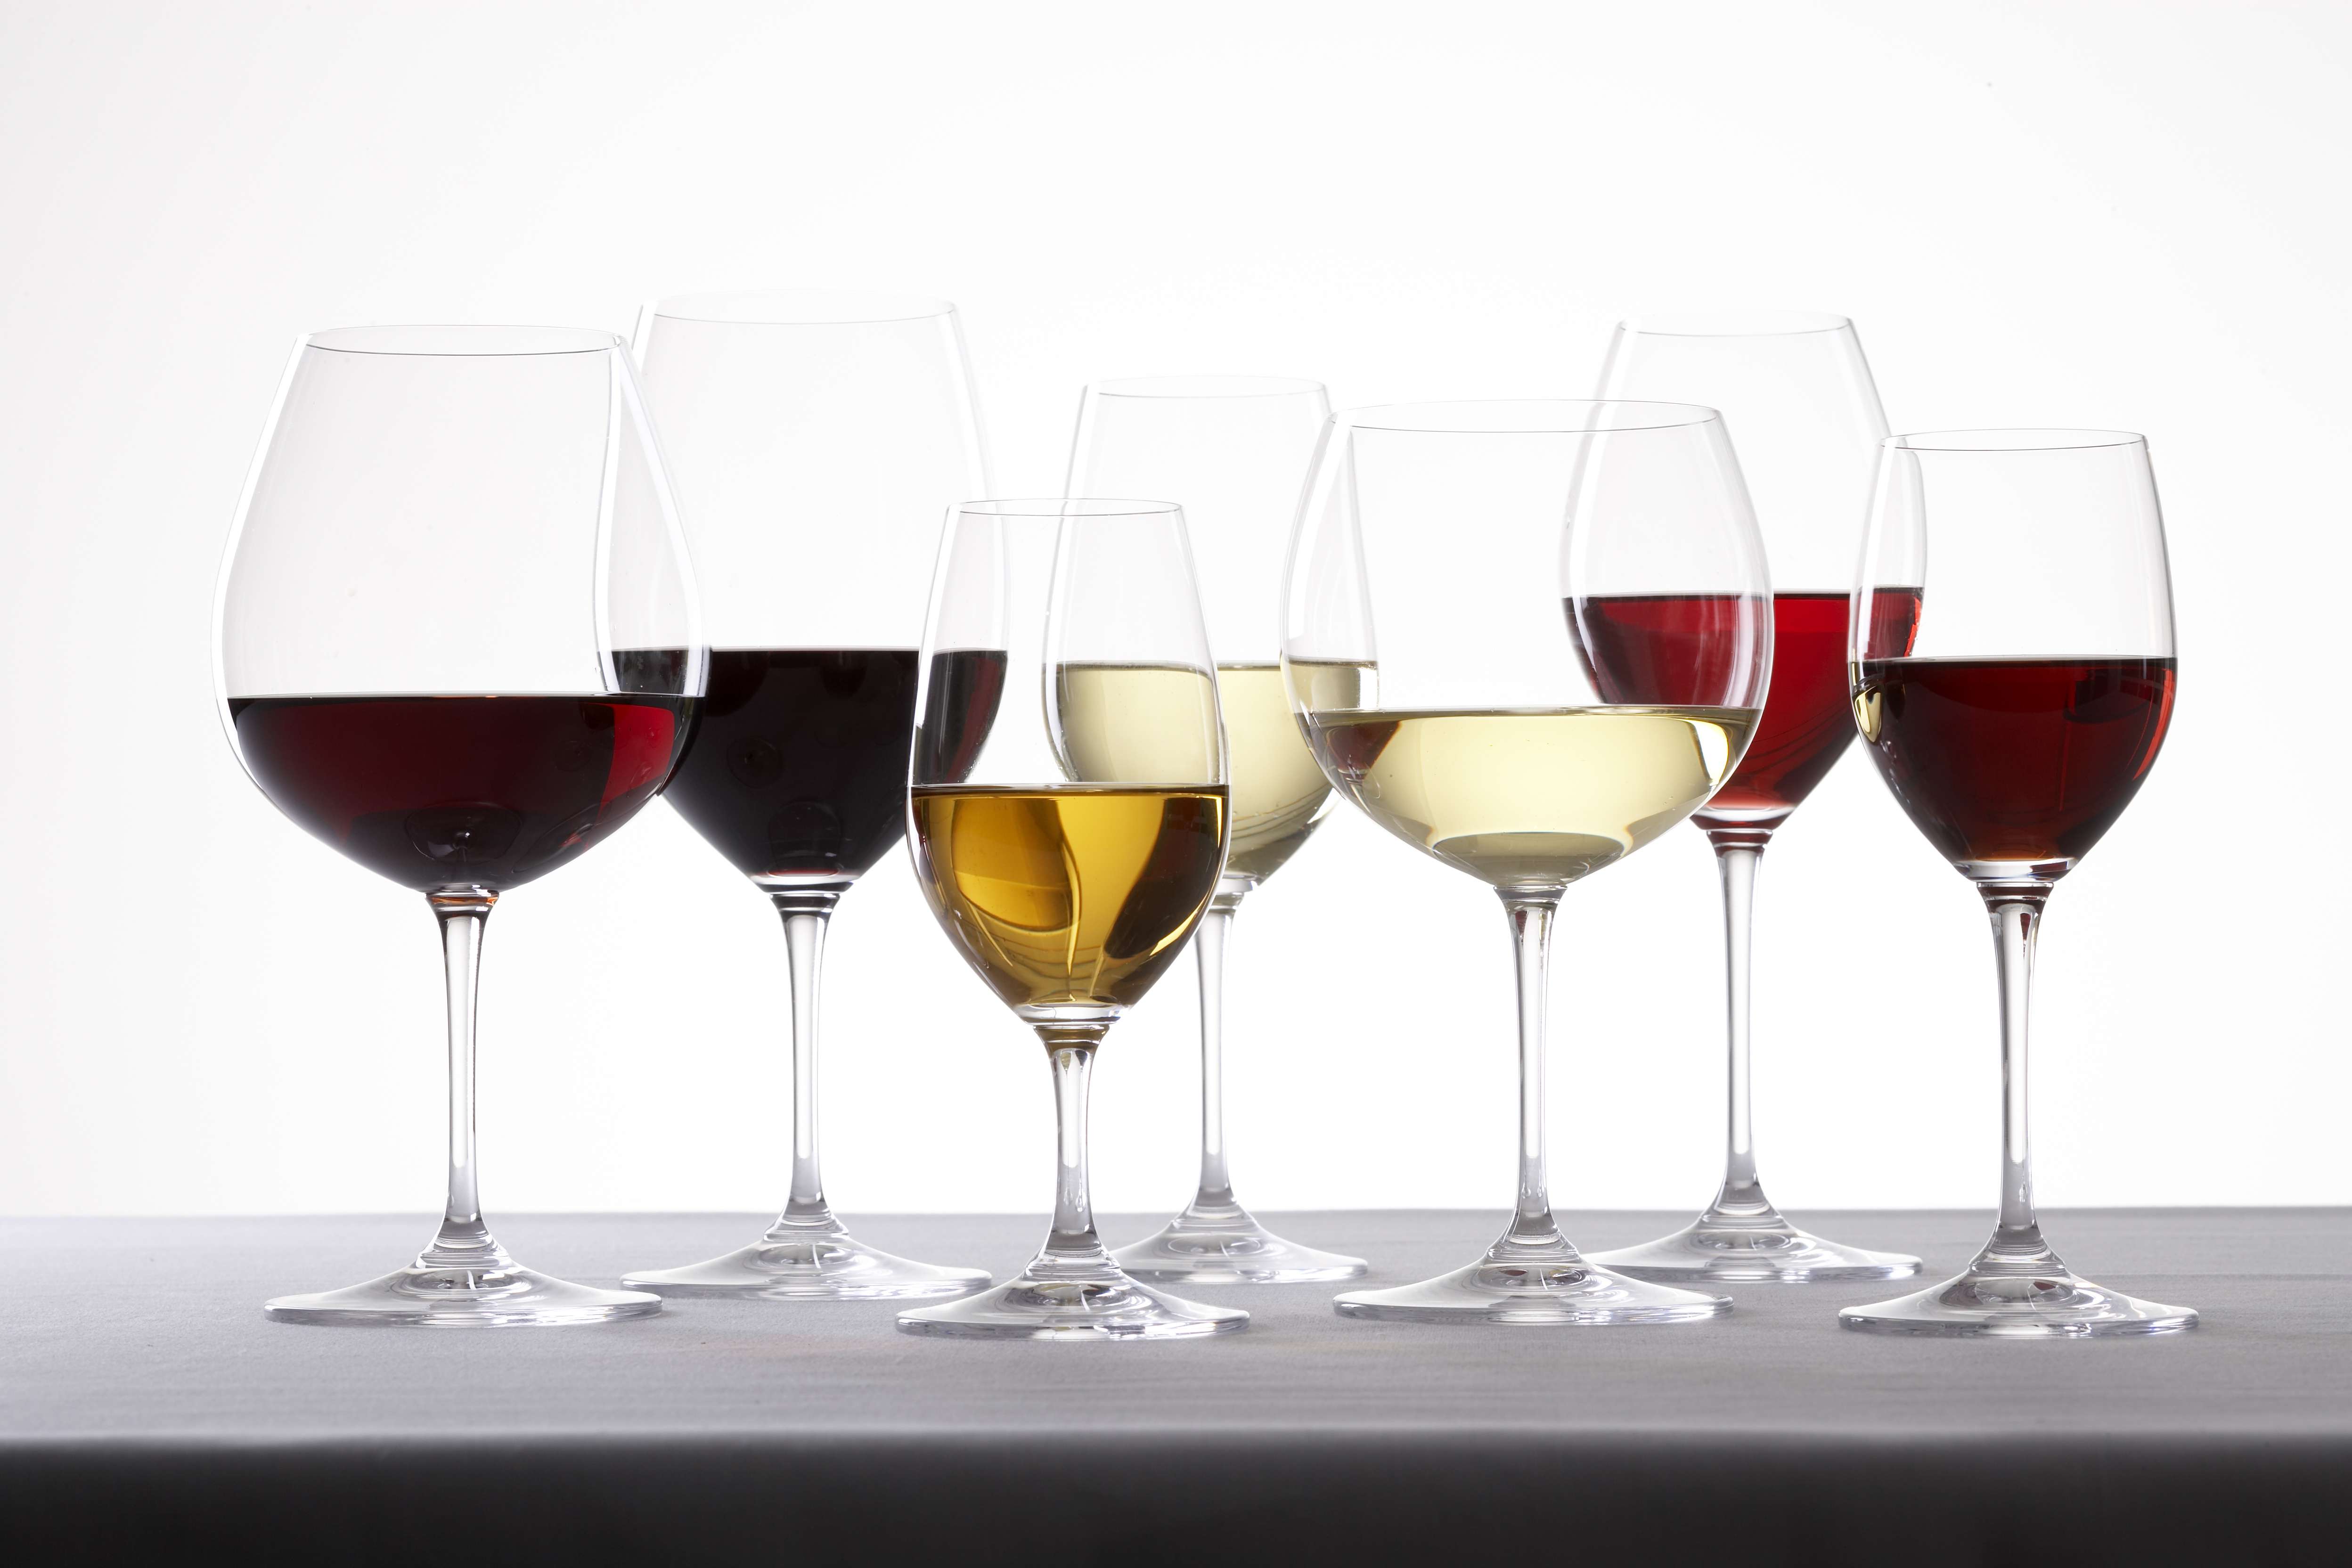 Le type de verre à vin influence-t-il le goût du vin ? – Château de Berne